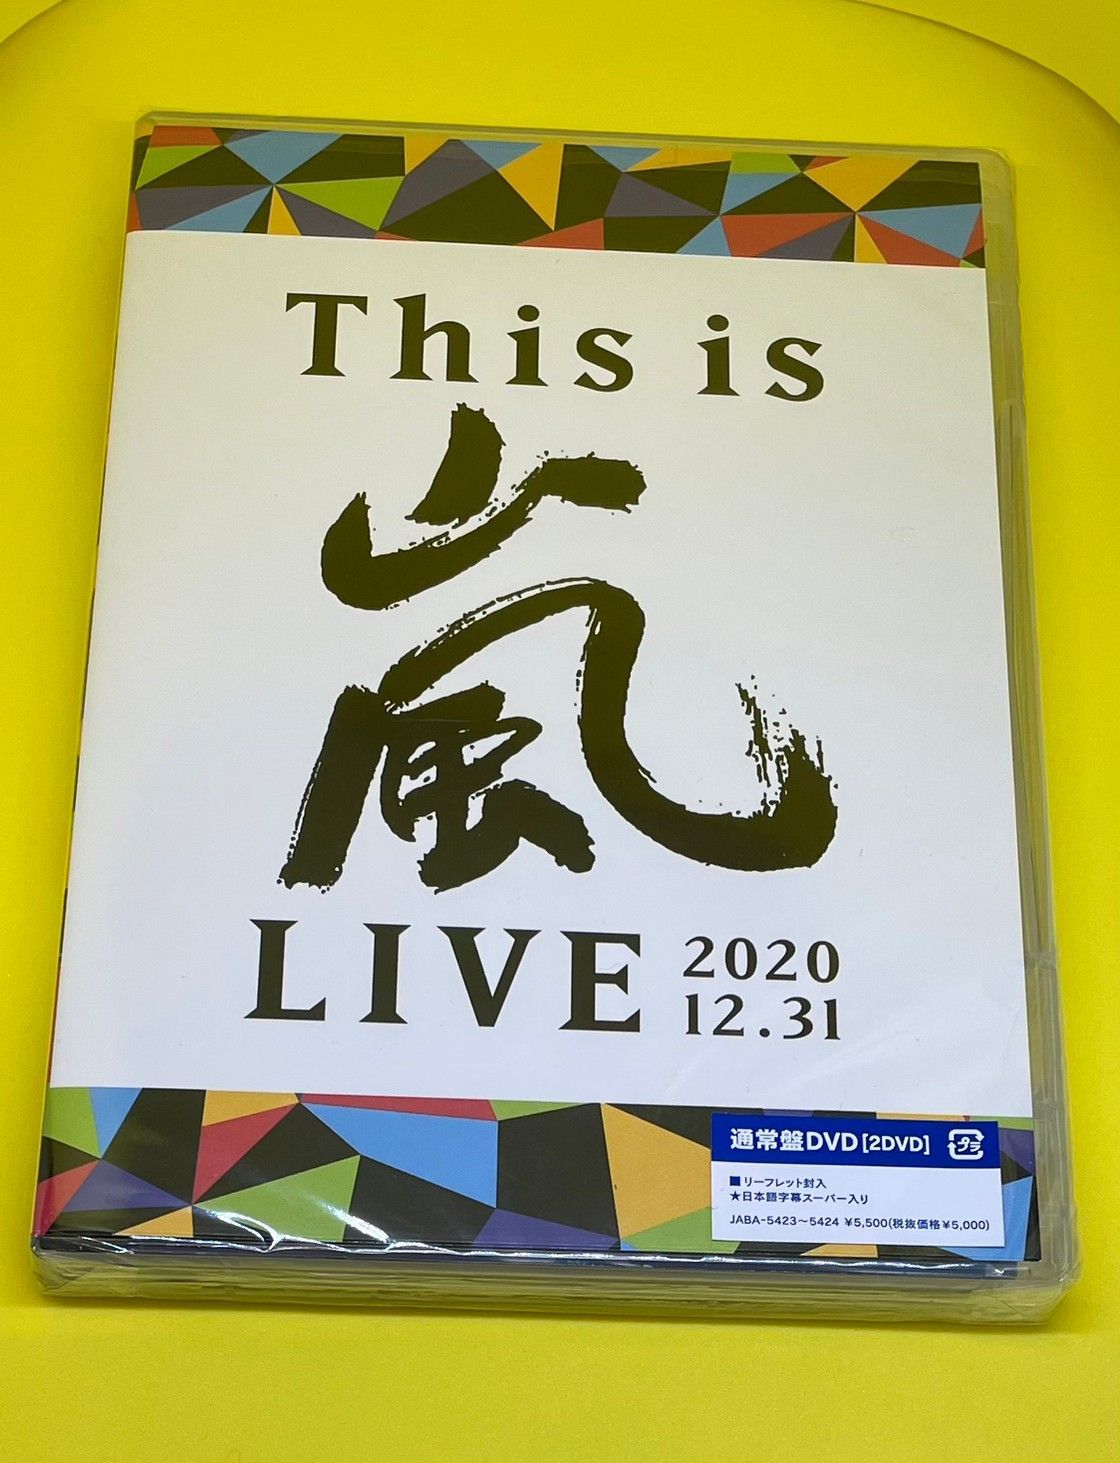 嵐 / This is 嵐 LIVE 2020.12.31 (通常盤)【DVD】 - メルカリ